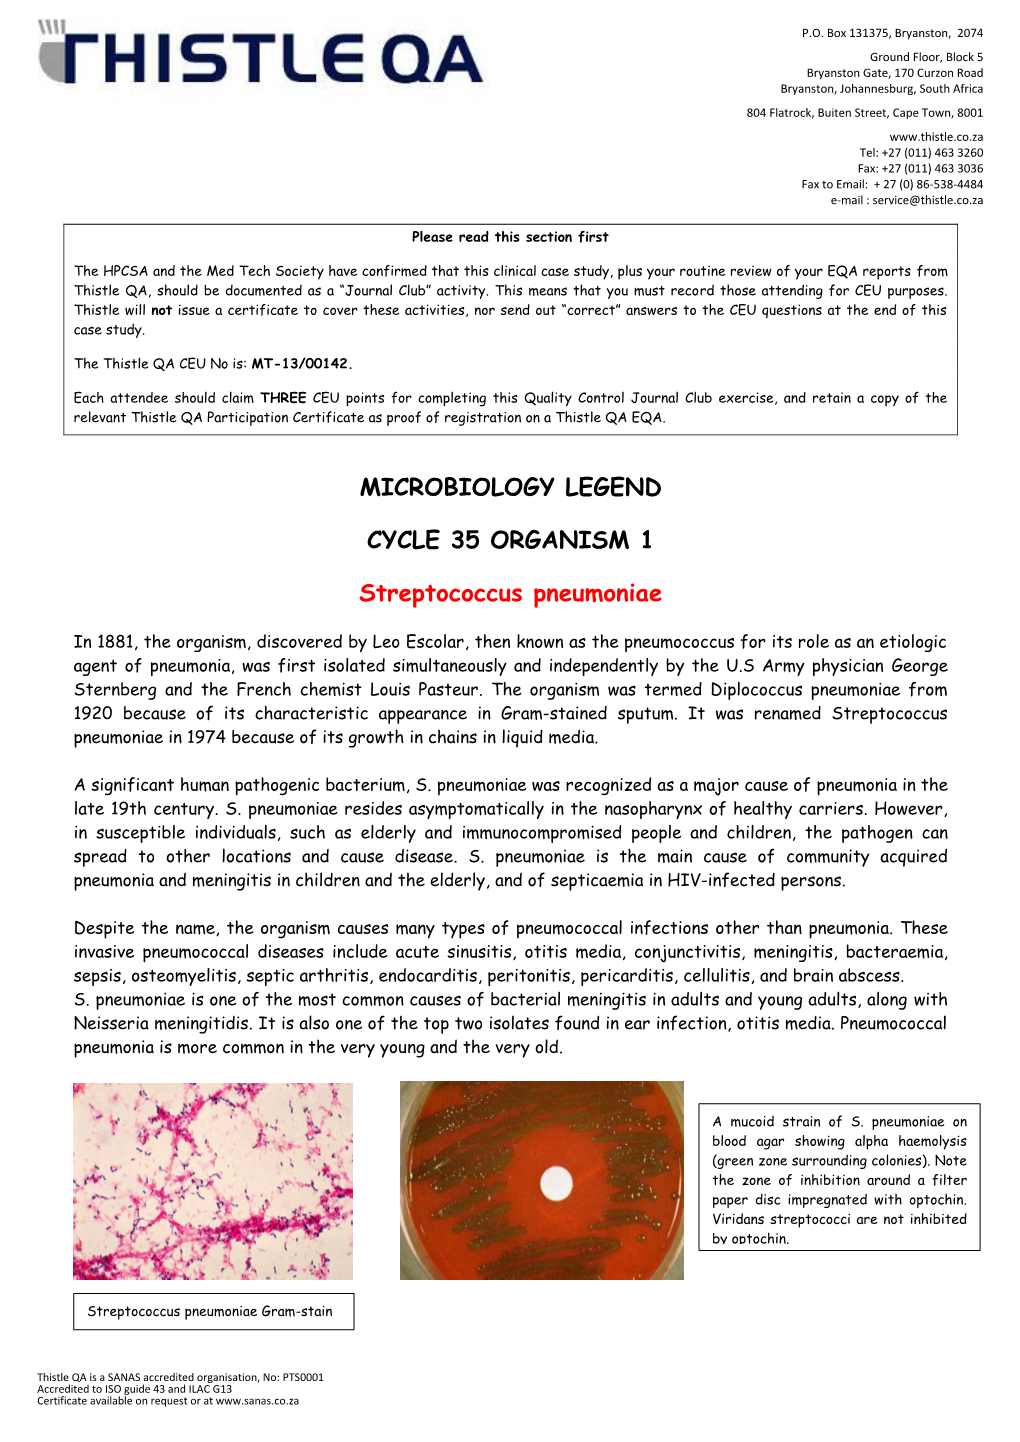 Cycle 35 Organism 1